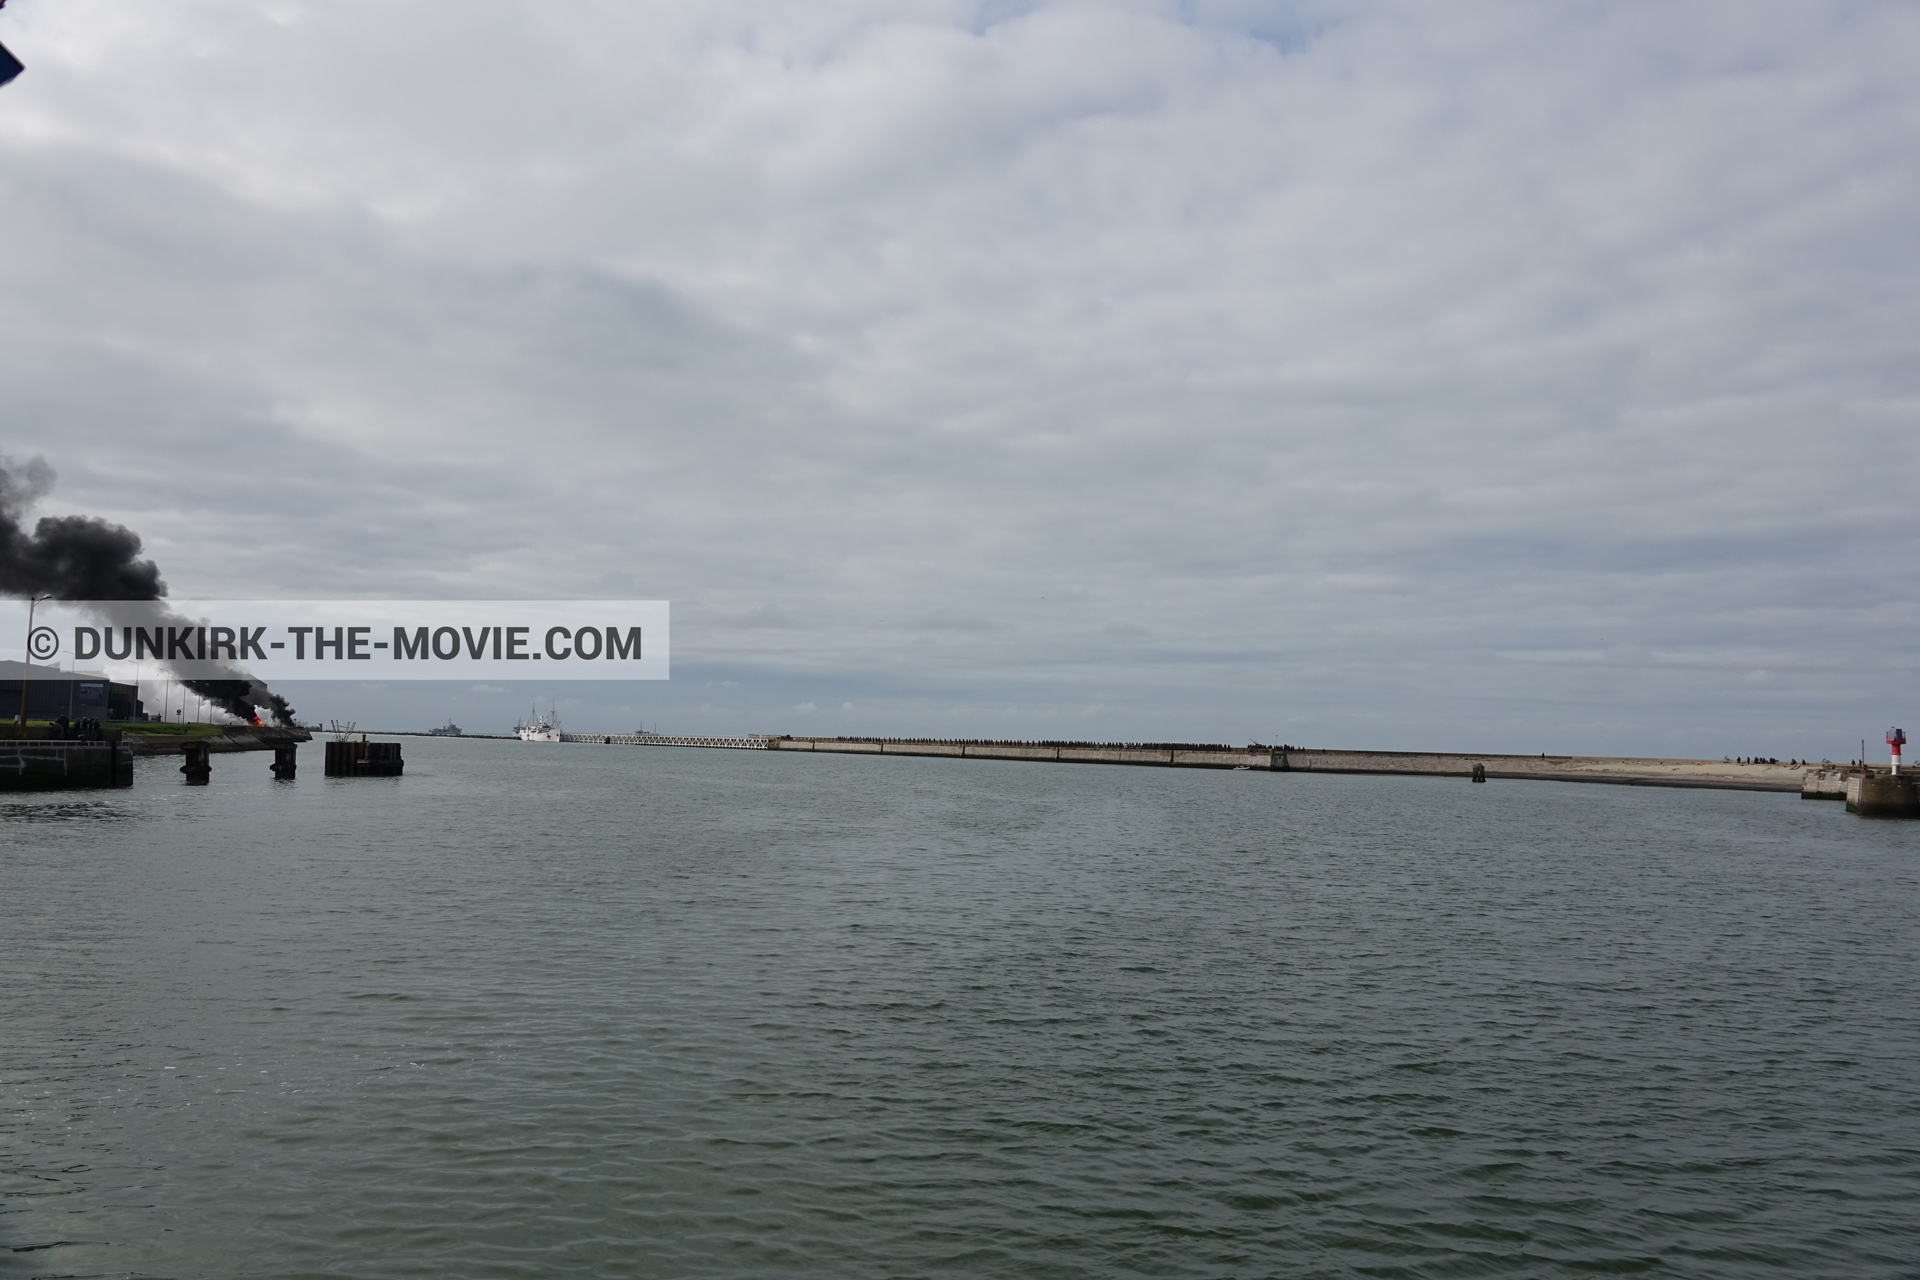 Fotos con humo negro, muelle del ESTE, mares calma,  durante el rodaje de la película Dunkerque de Nolan